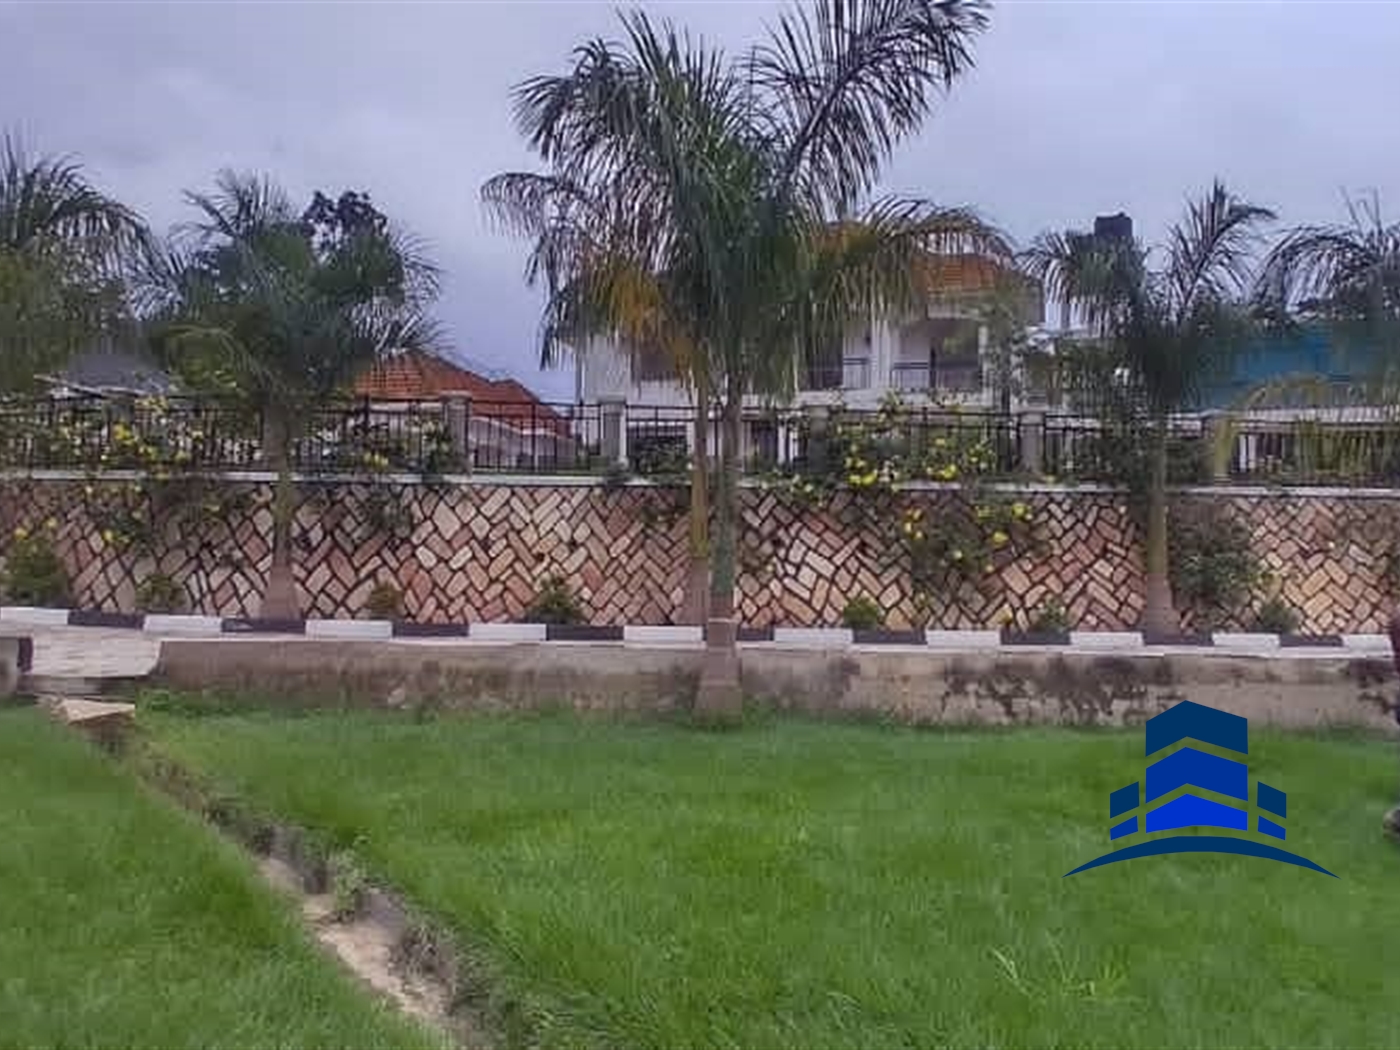 Mansion for sale in Kawuga Mukono